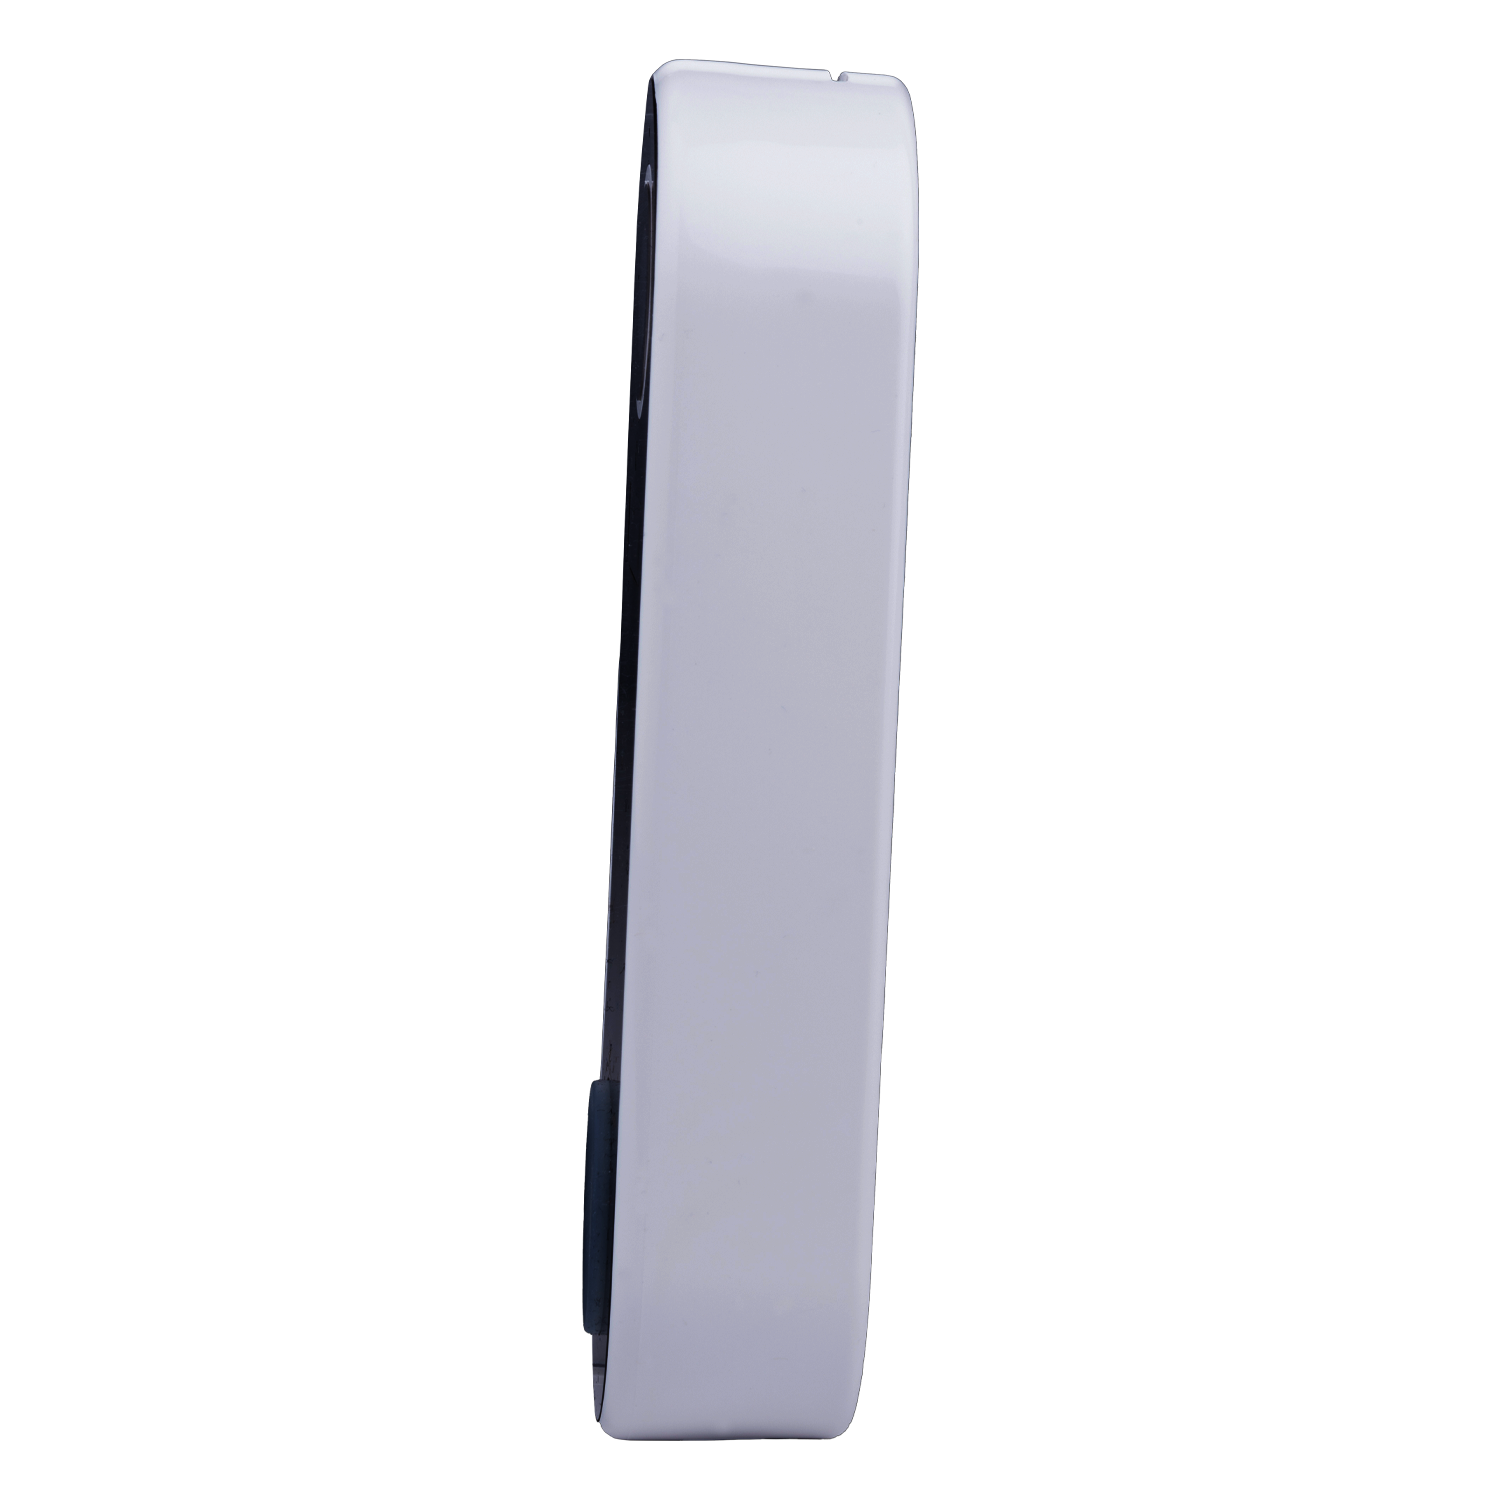 Smart Video doorbell (battery operated)